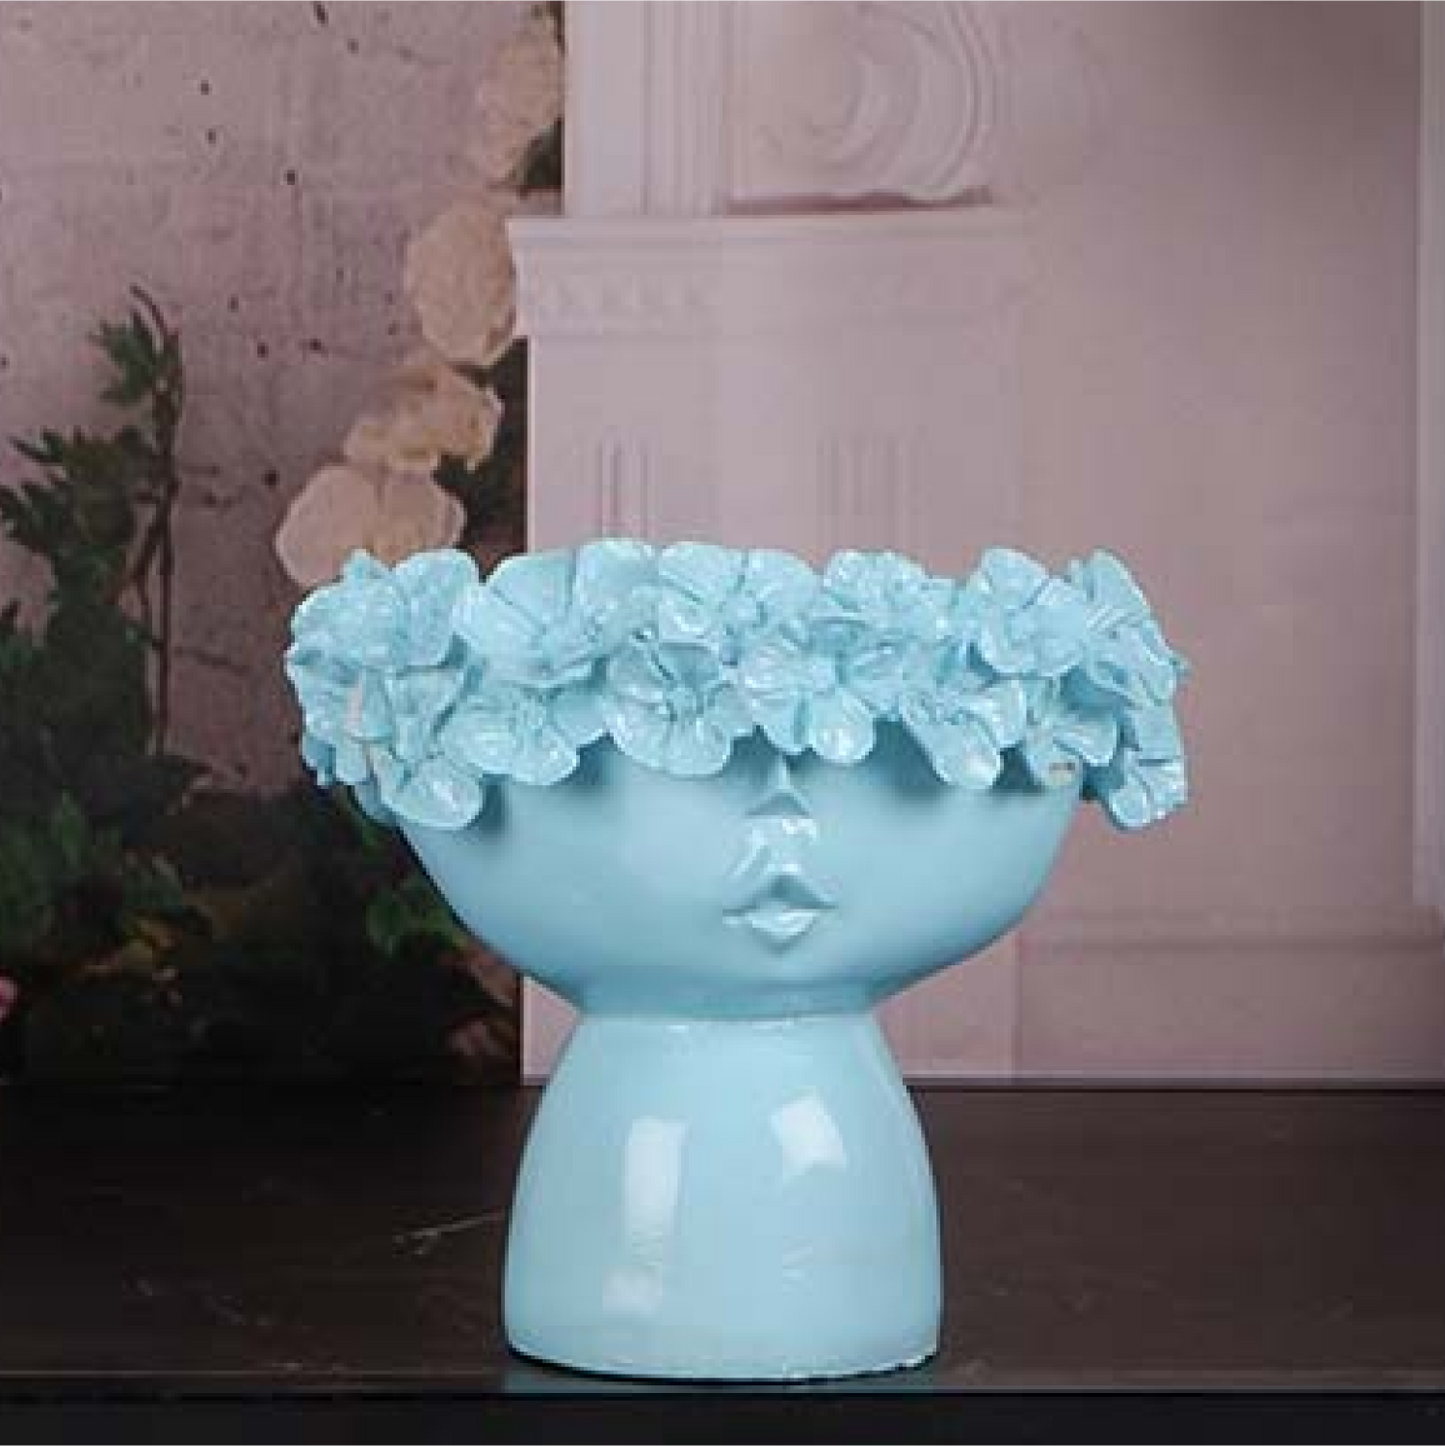 Female Flowers Head Ceramic Planter For Home Décor